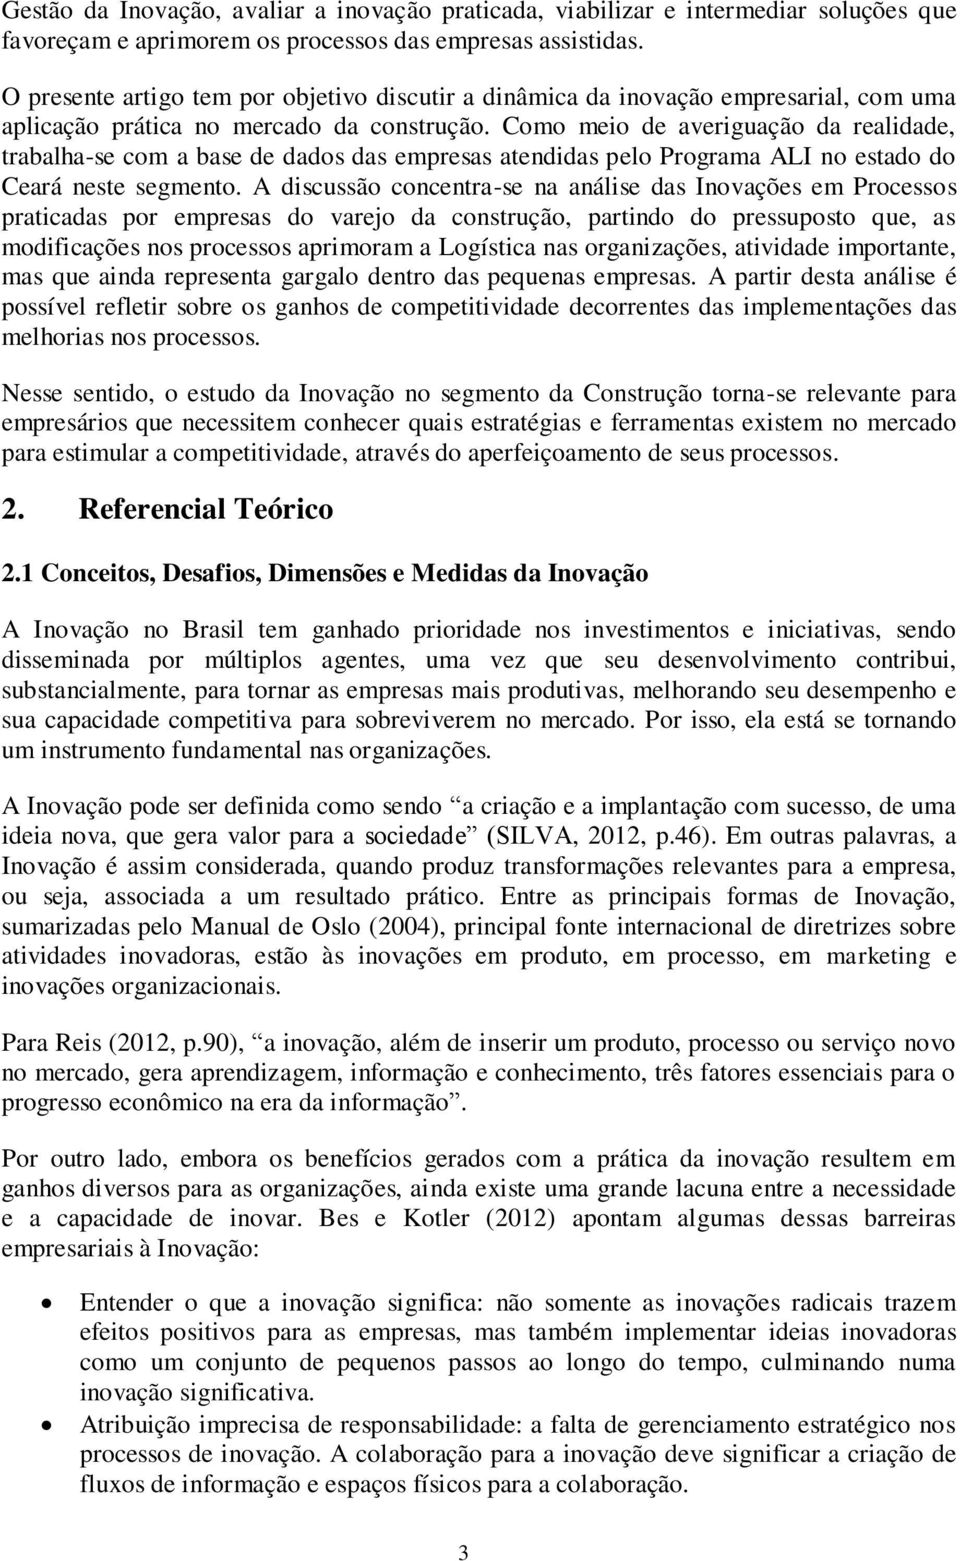 Como meio de averiguação da realidade, trabalha-se com a base de dados das empresas atendidas pelo Programa ALI no estado do Ceará neste segmento.